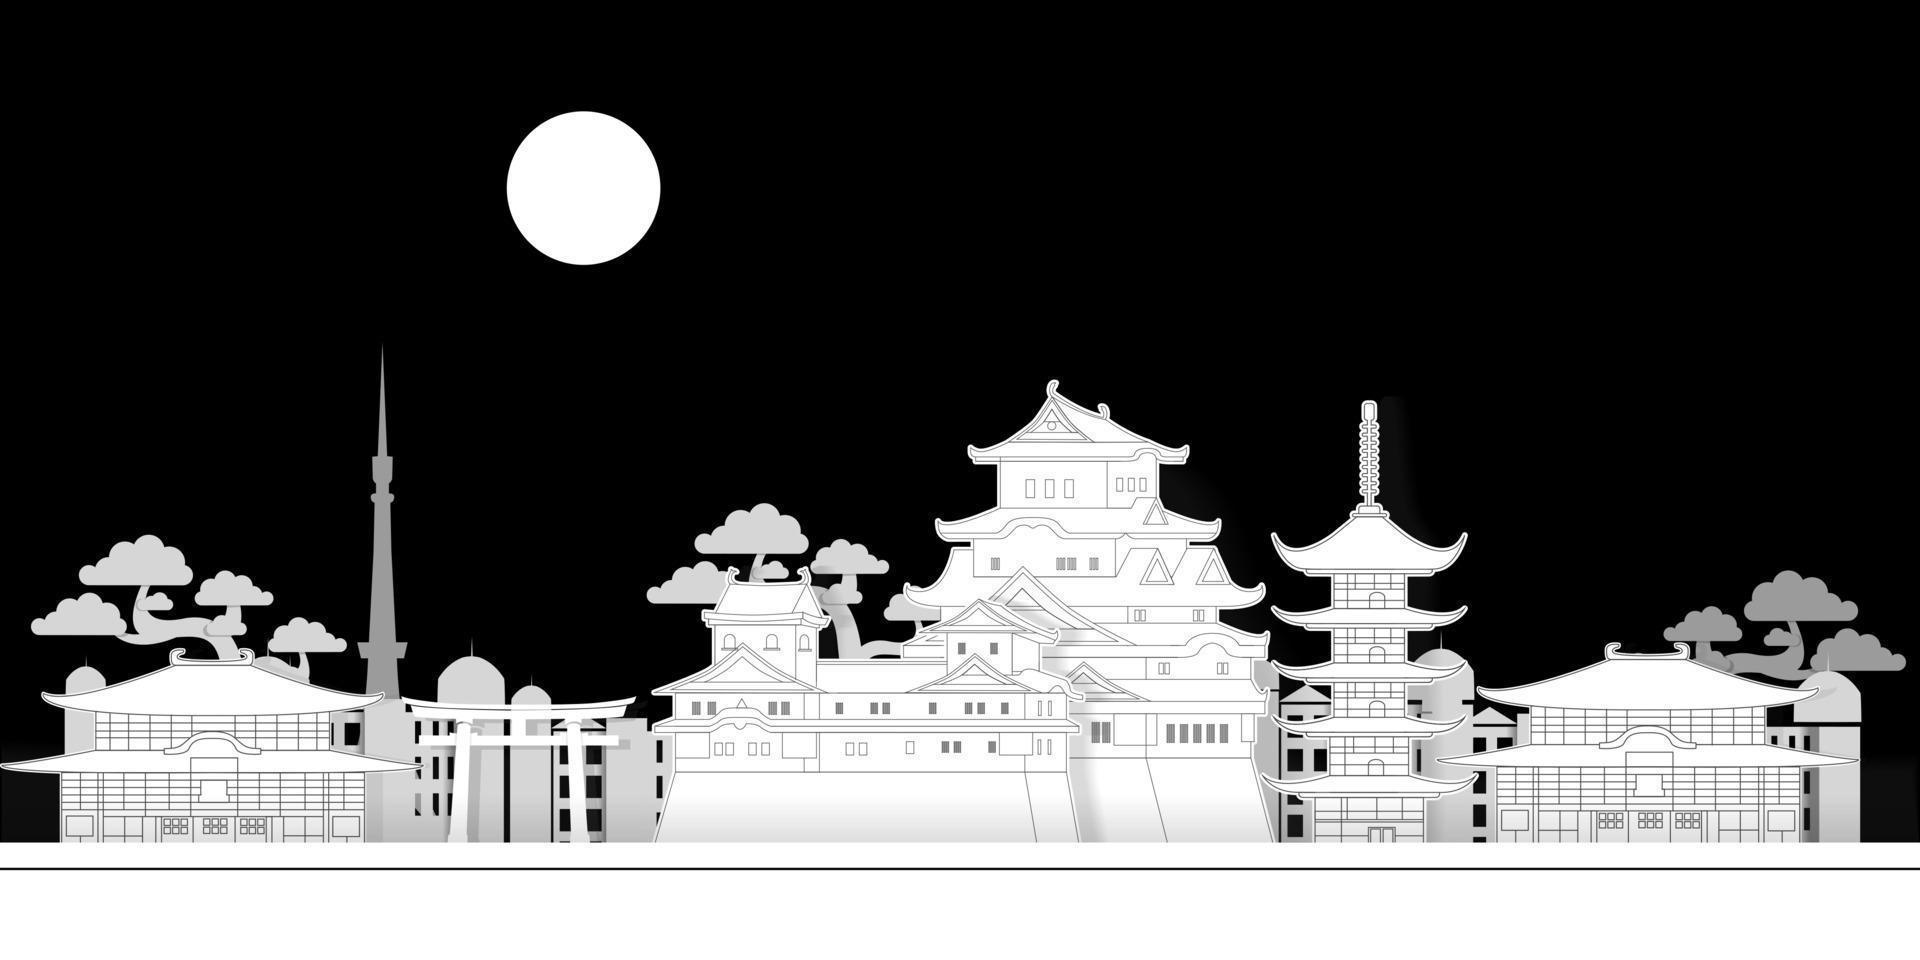 japanische landschaft im mondlicht papierschnitt vektor hintergrunddesign